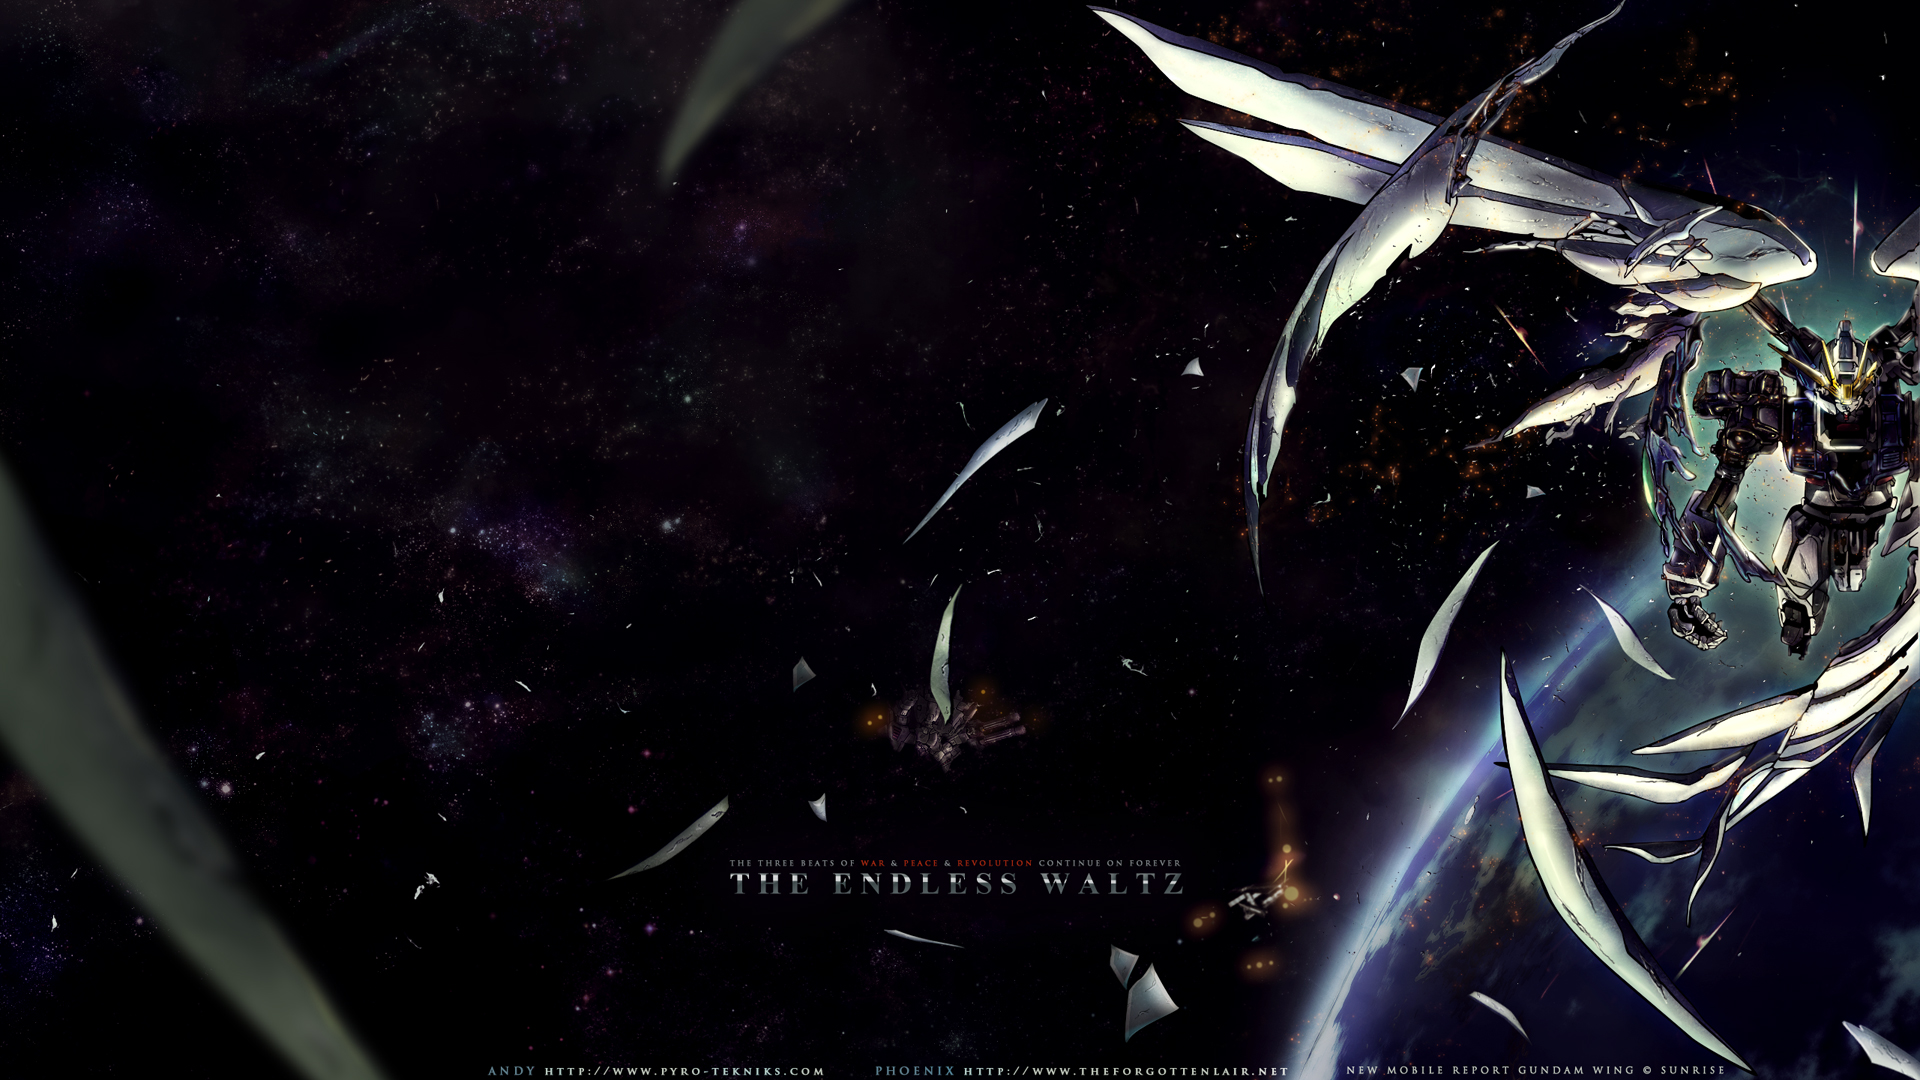 Descarga gratuita de fondo de pantalla para móvil de Gundam, Animado.